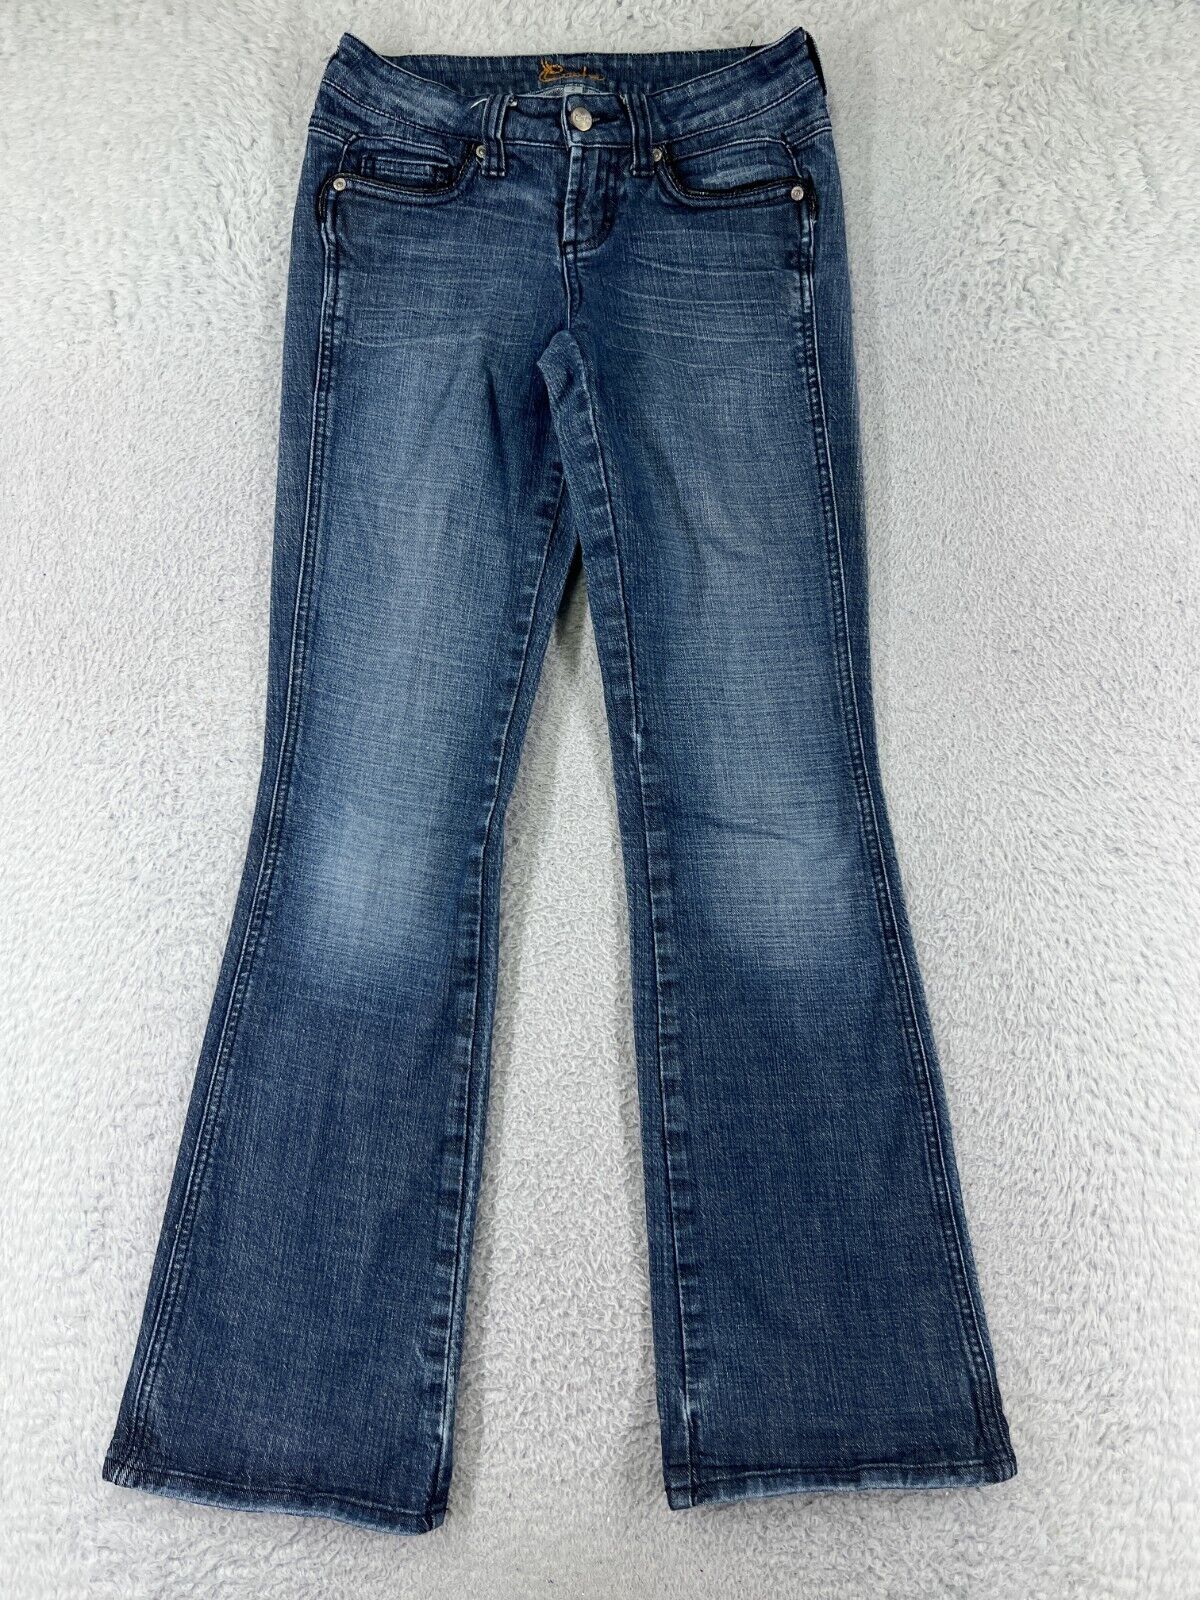 Cache Pants Womens 2 Blue Denim Jeans Bootcut Cot… - image 1